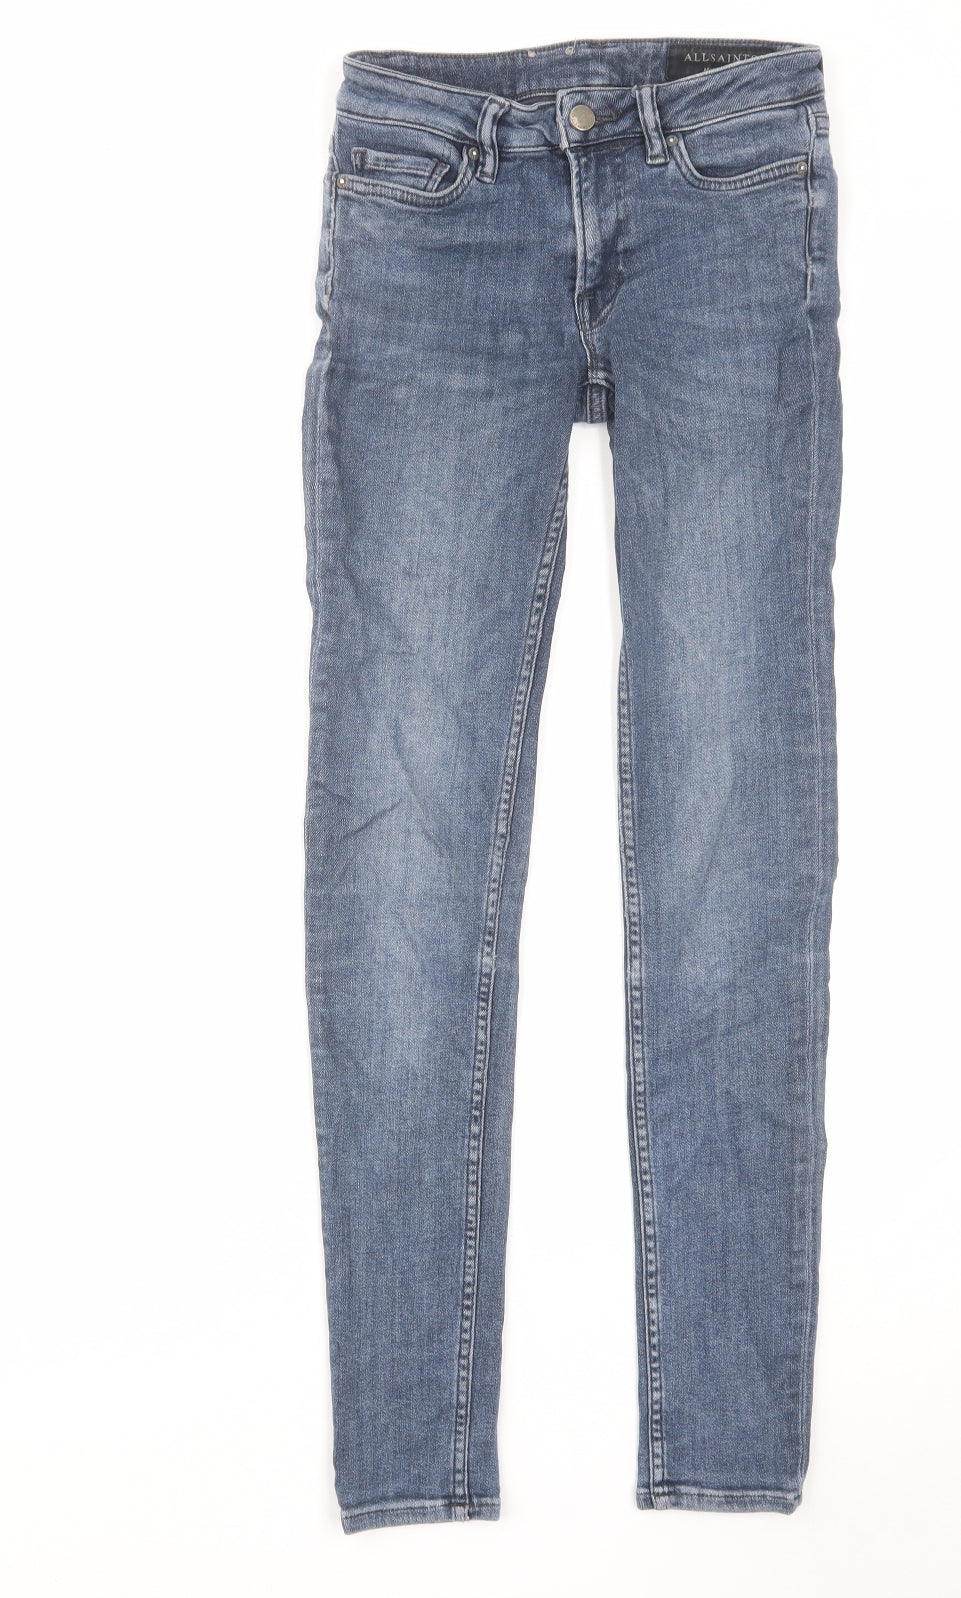 AllSaints Womens Blue Cotton Skinny Jeans Size 24 in L29 in Regular Zip